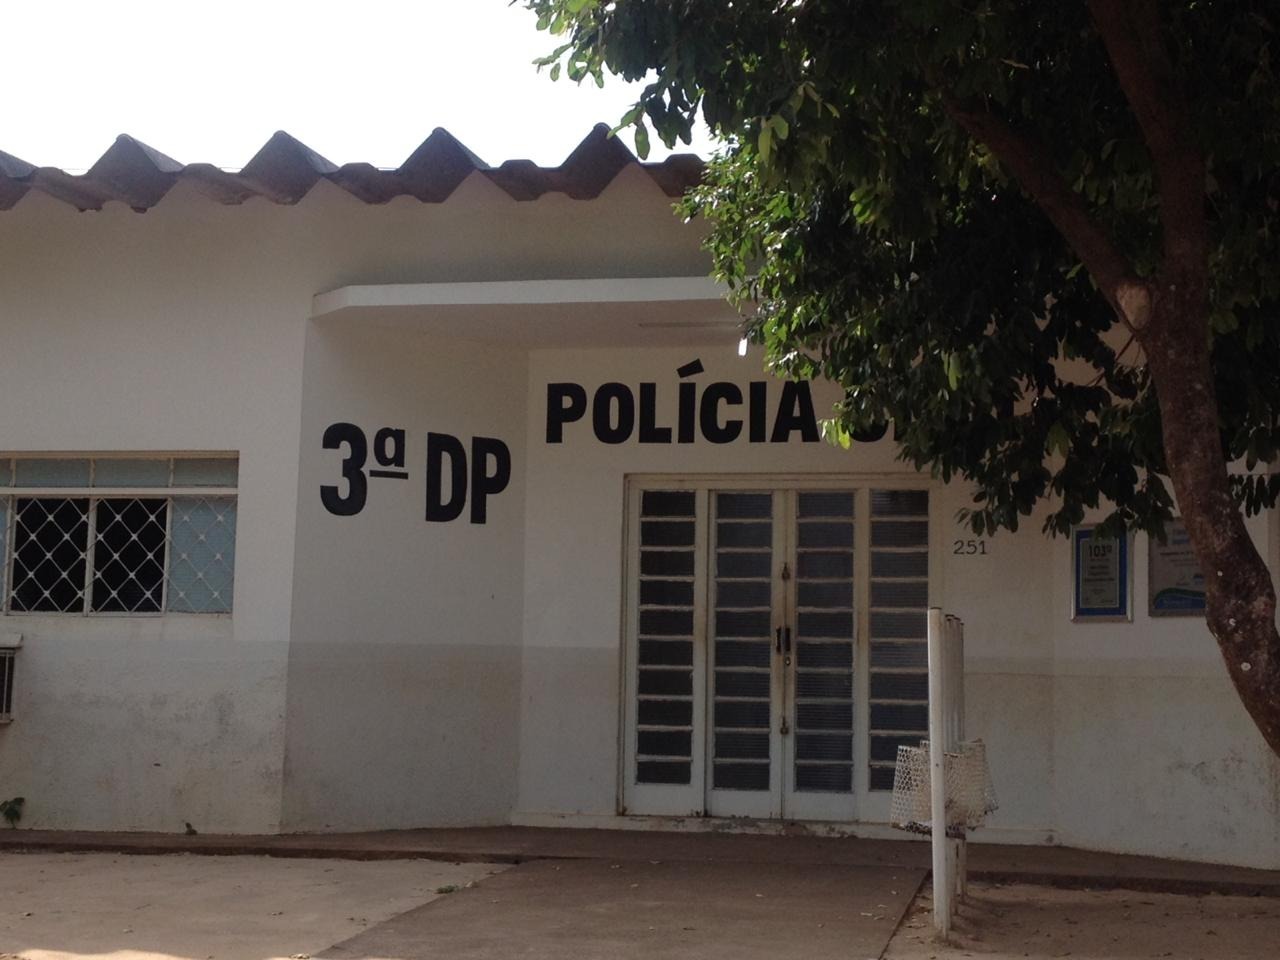 Localizados, os suspeitos foram detidos em flagrante e encaminhados à 3ªDP. Foto: Arquivo/Rádio Caçula